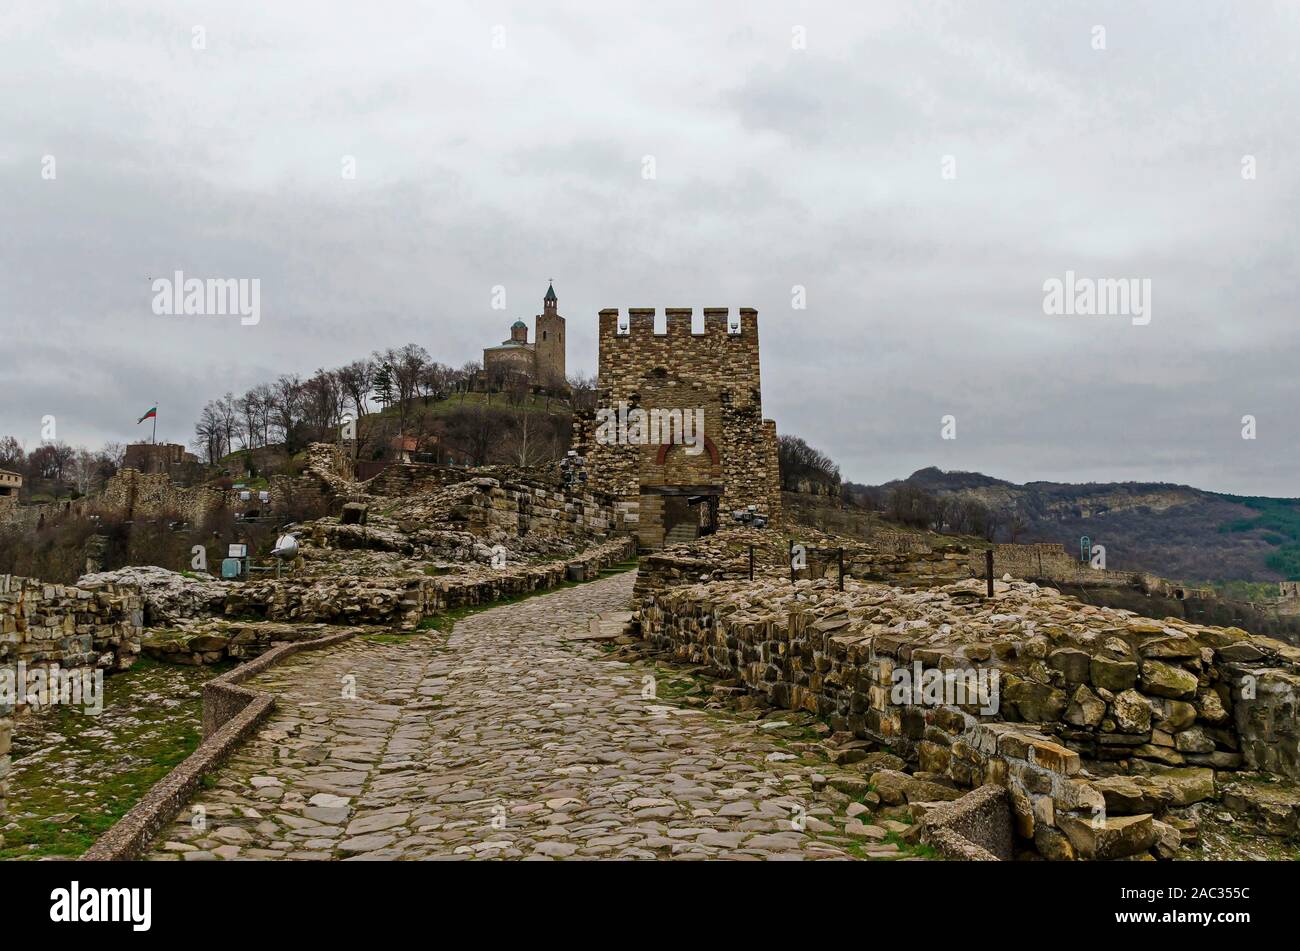 L'entrée principale et de la forteresse de tsarevets, Bastion médiéval situé sur une colline avec le même nom dans la région de Veliko Tarnovo, l'ancienne capitale de la Bulgarie, Banque D'Images